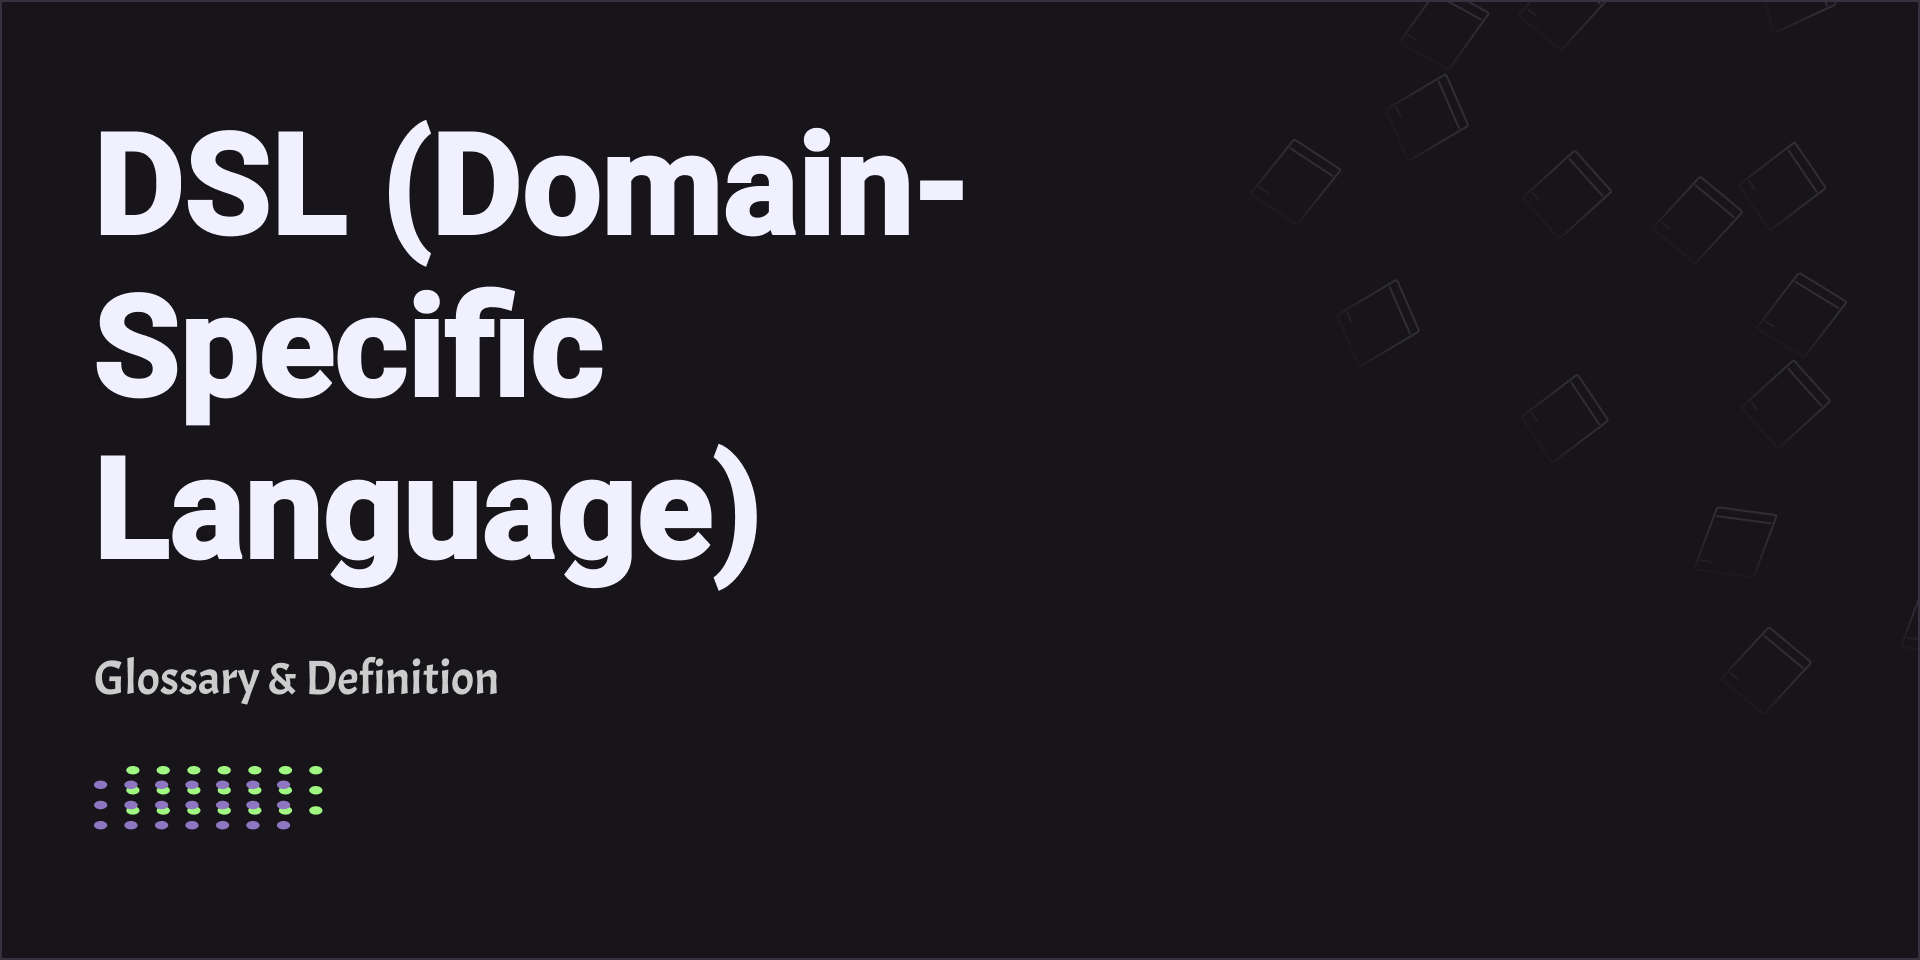 DSL (Domain-Specific Language)